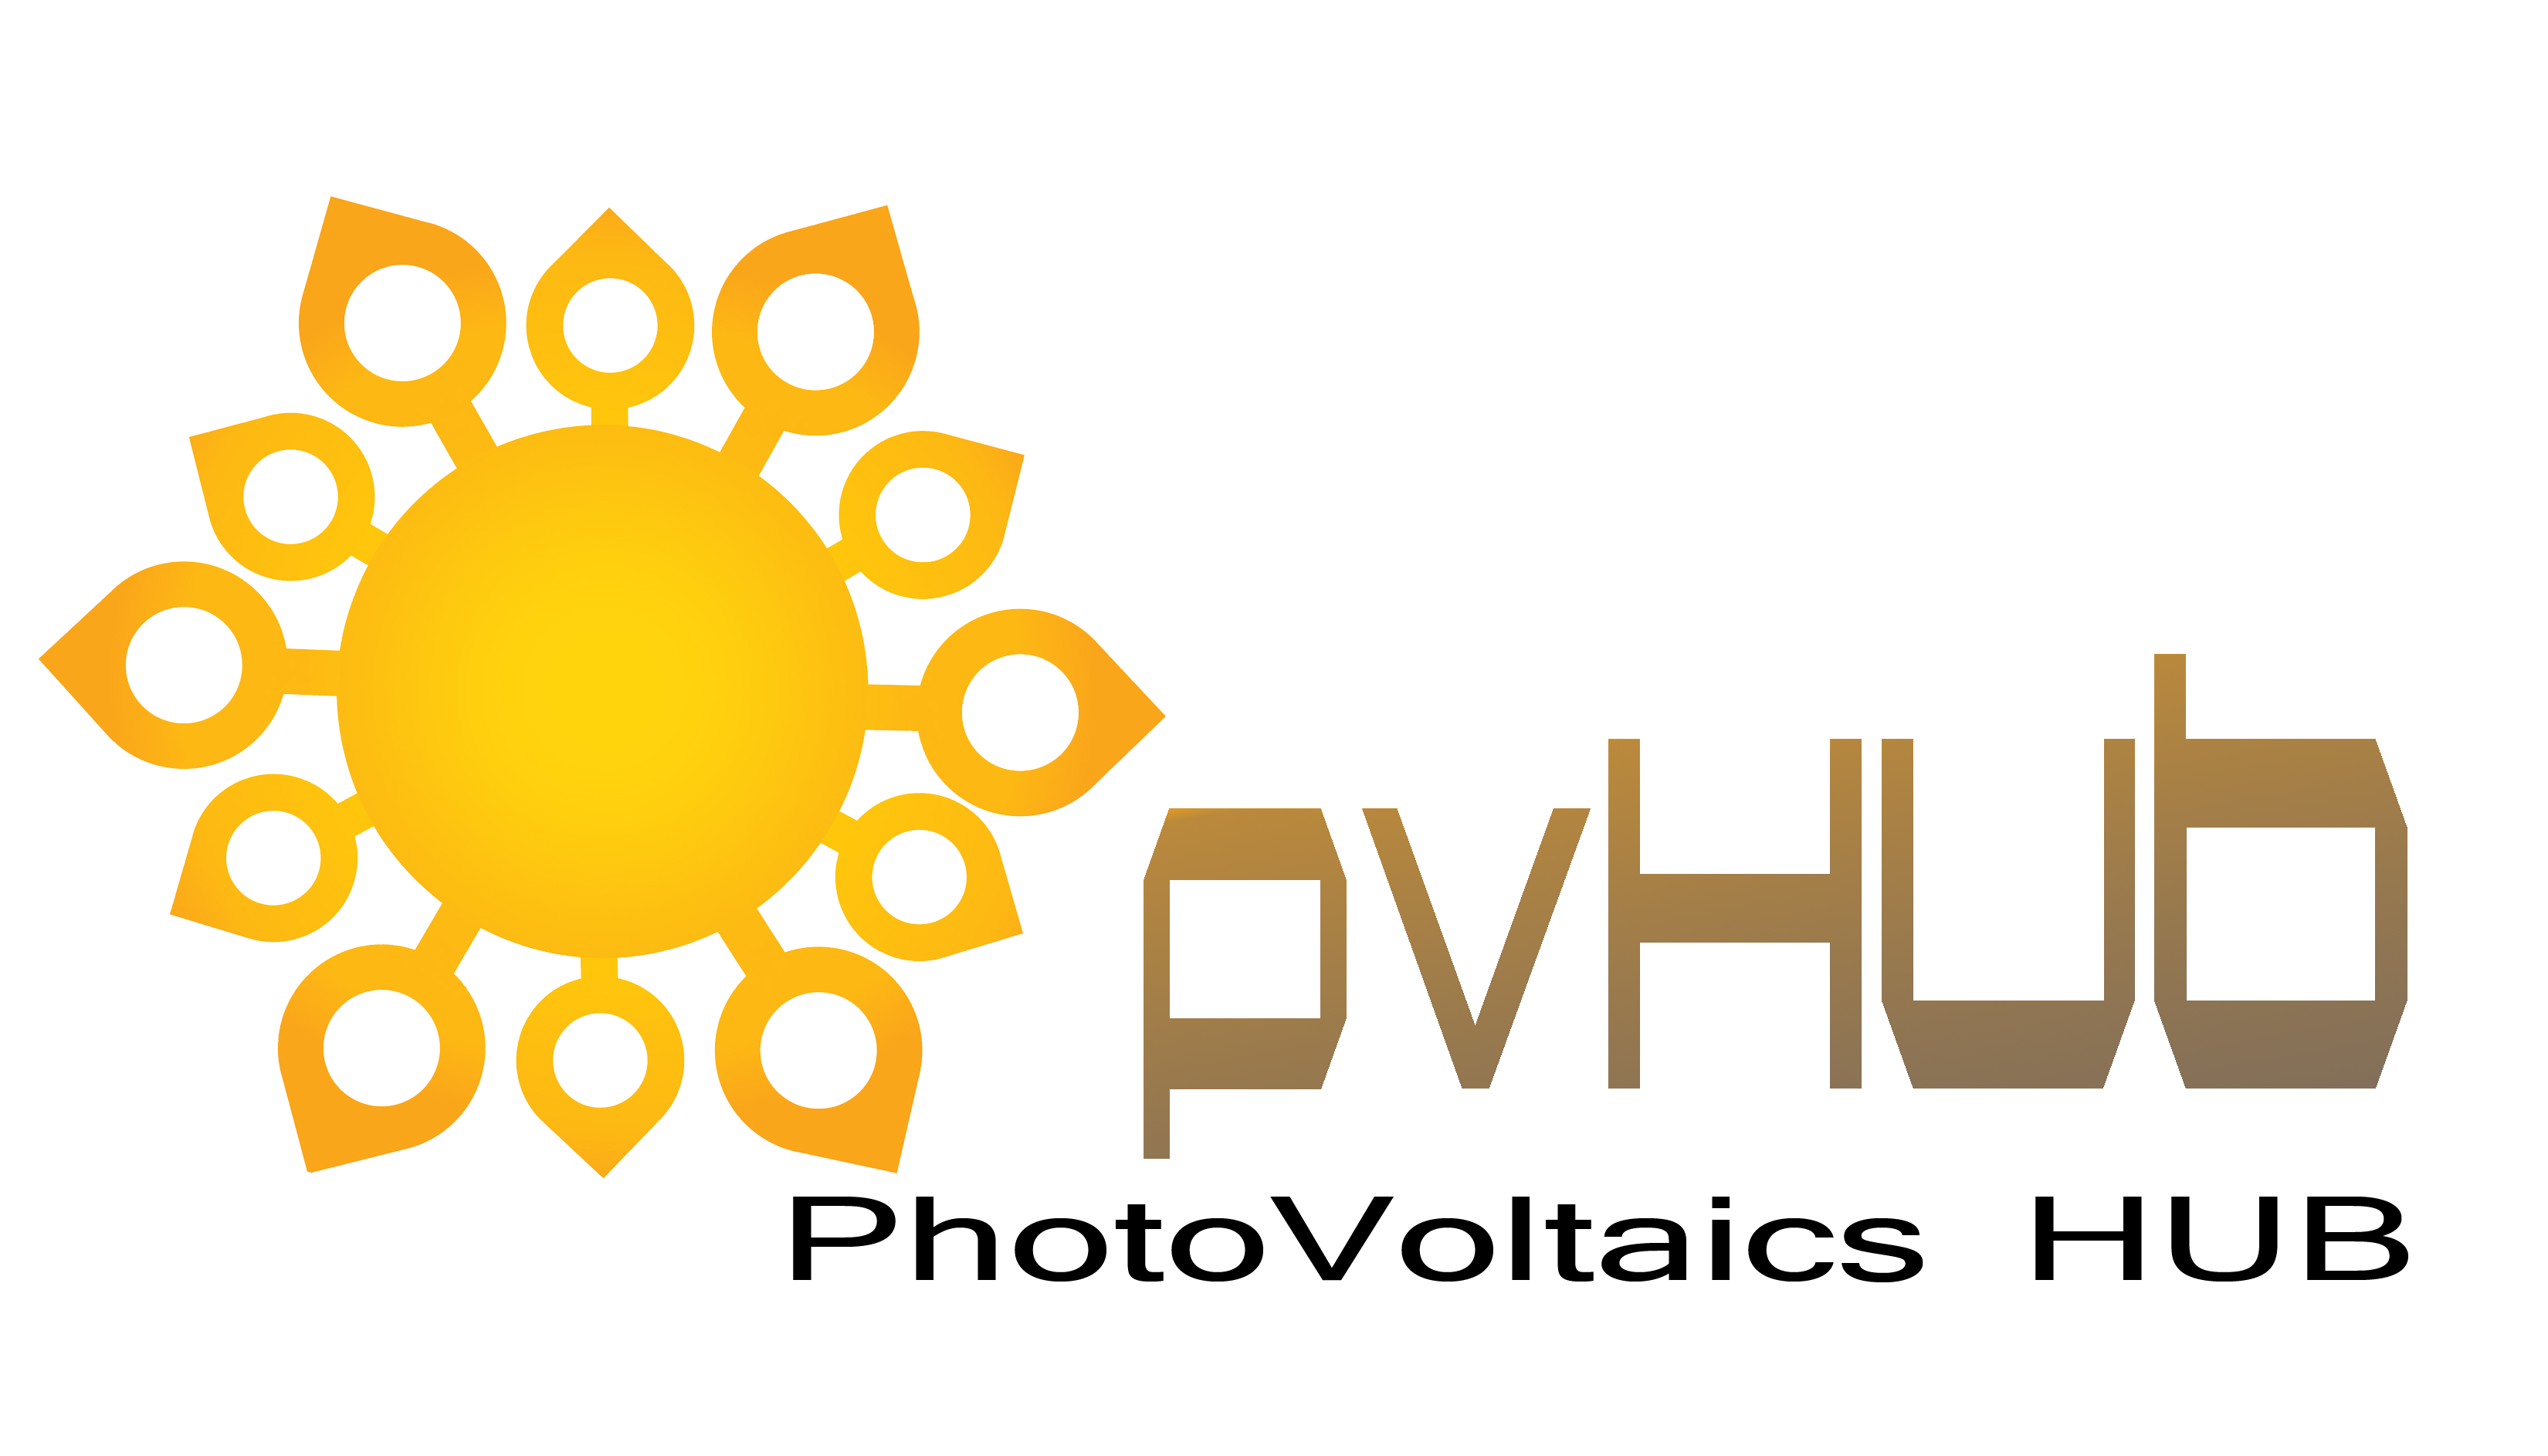 Photovoltaics HUB group image